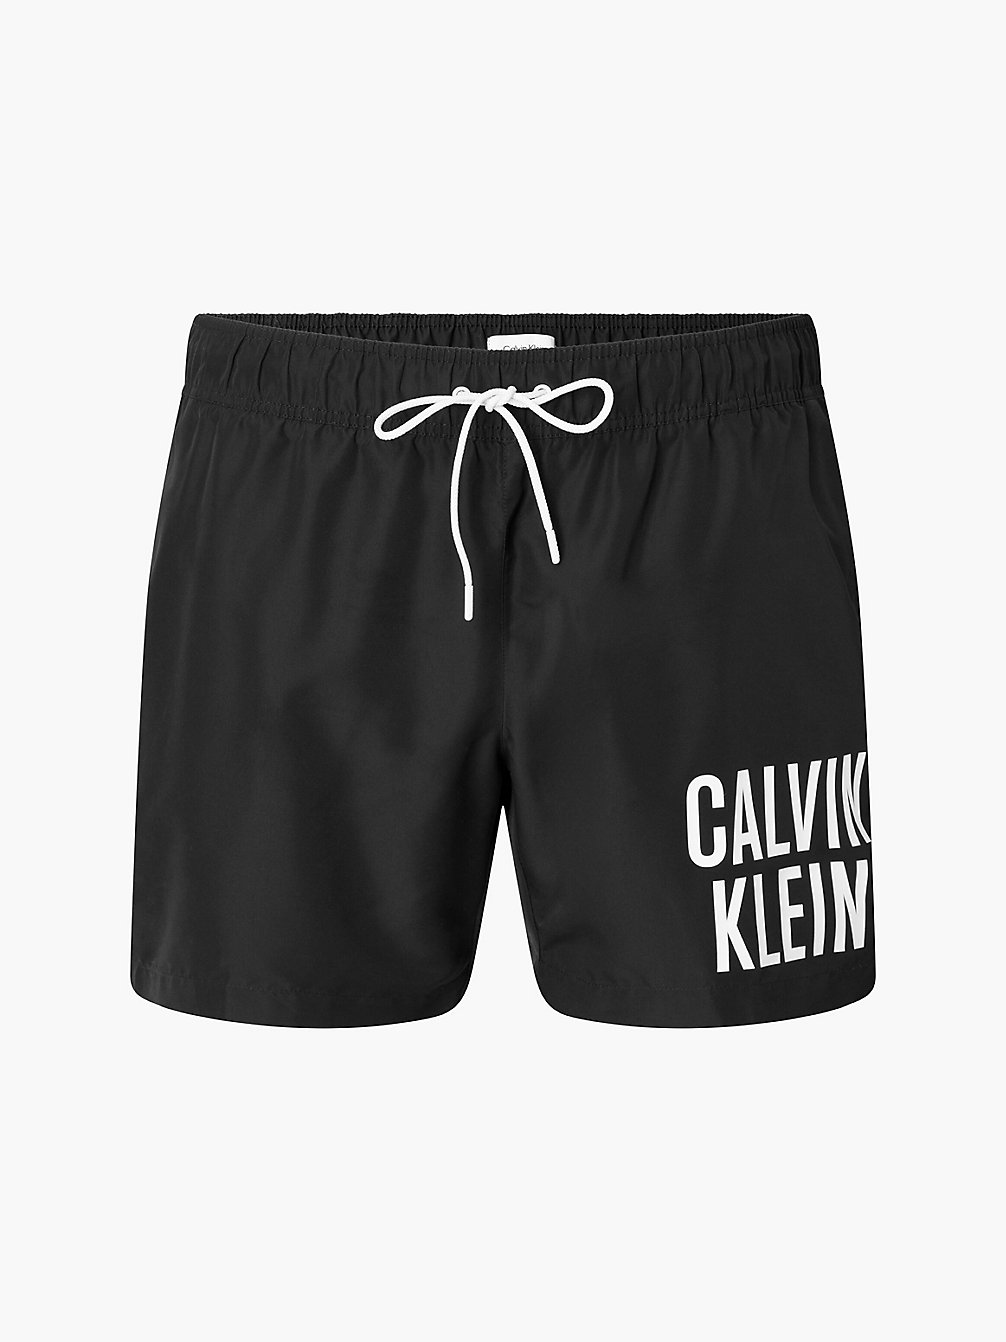 PVH BLACK Badeshorts Mit Tunnelzug In Großen Größen - Intense Power Plus undefined Herren Calvin Klein